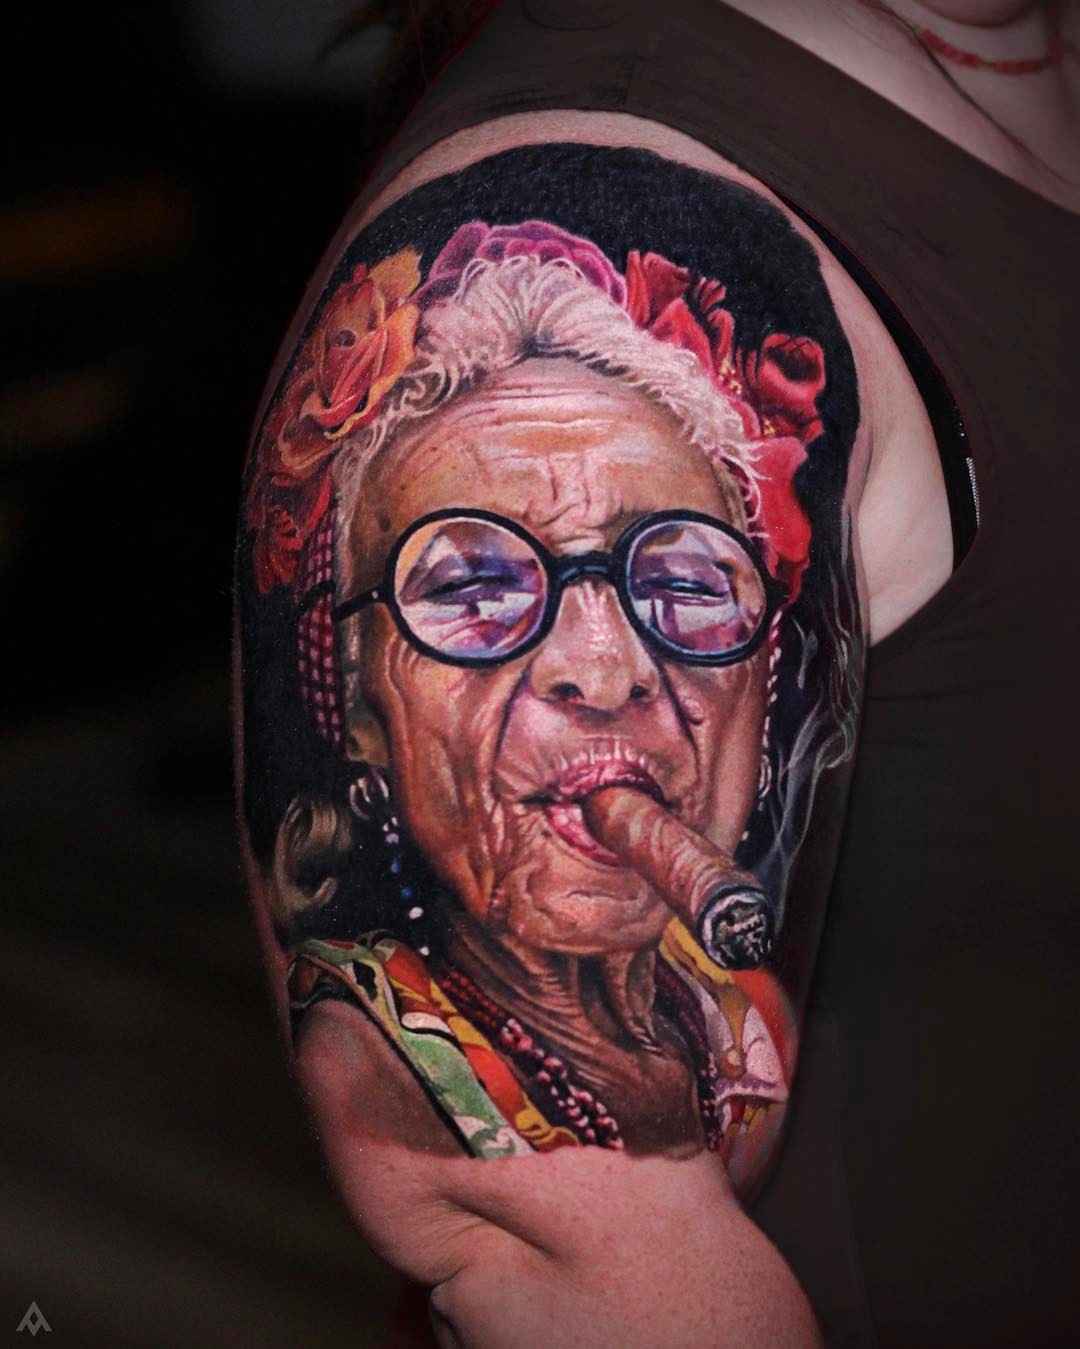 Tattoo artist Luka Lajoie, color portrait tattoo realism